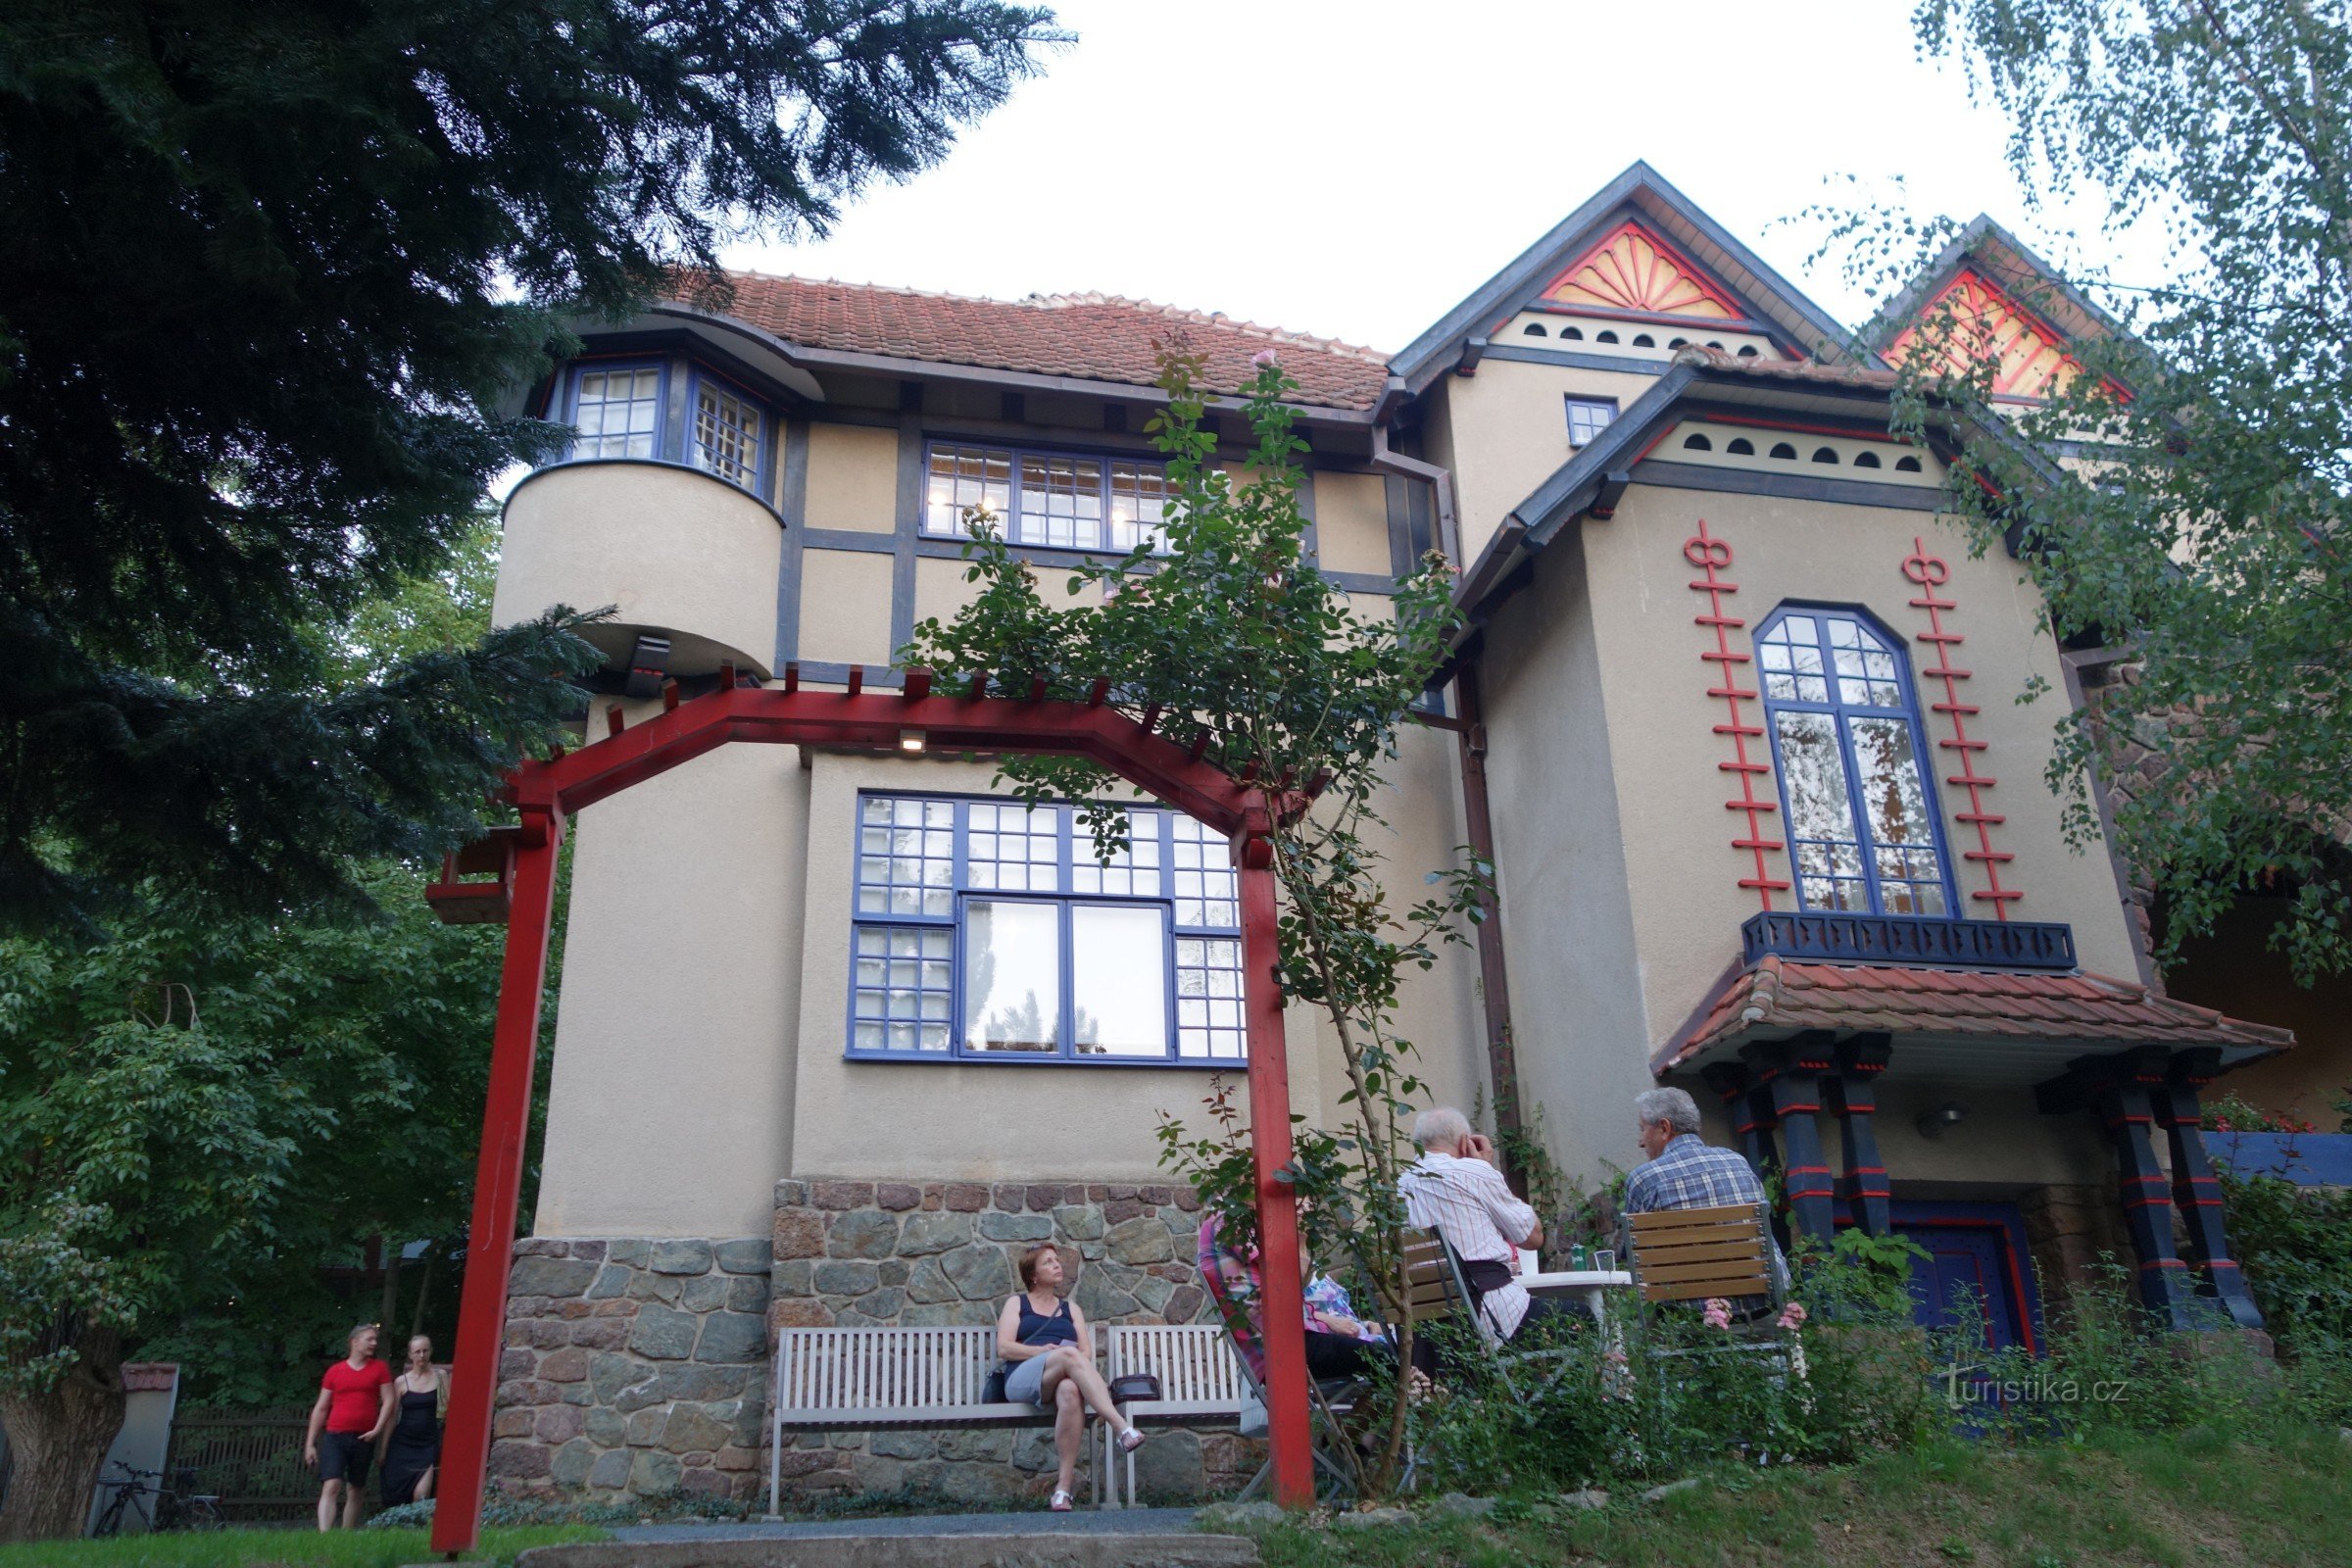 Vila lui Jurkovič din Brno după reconstrucție